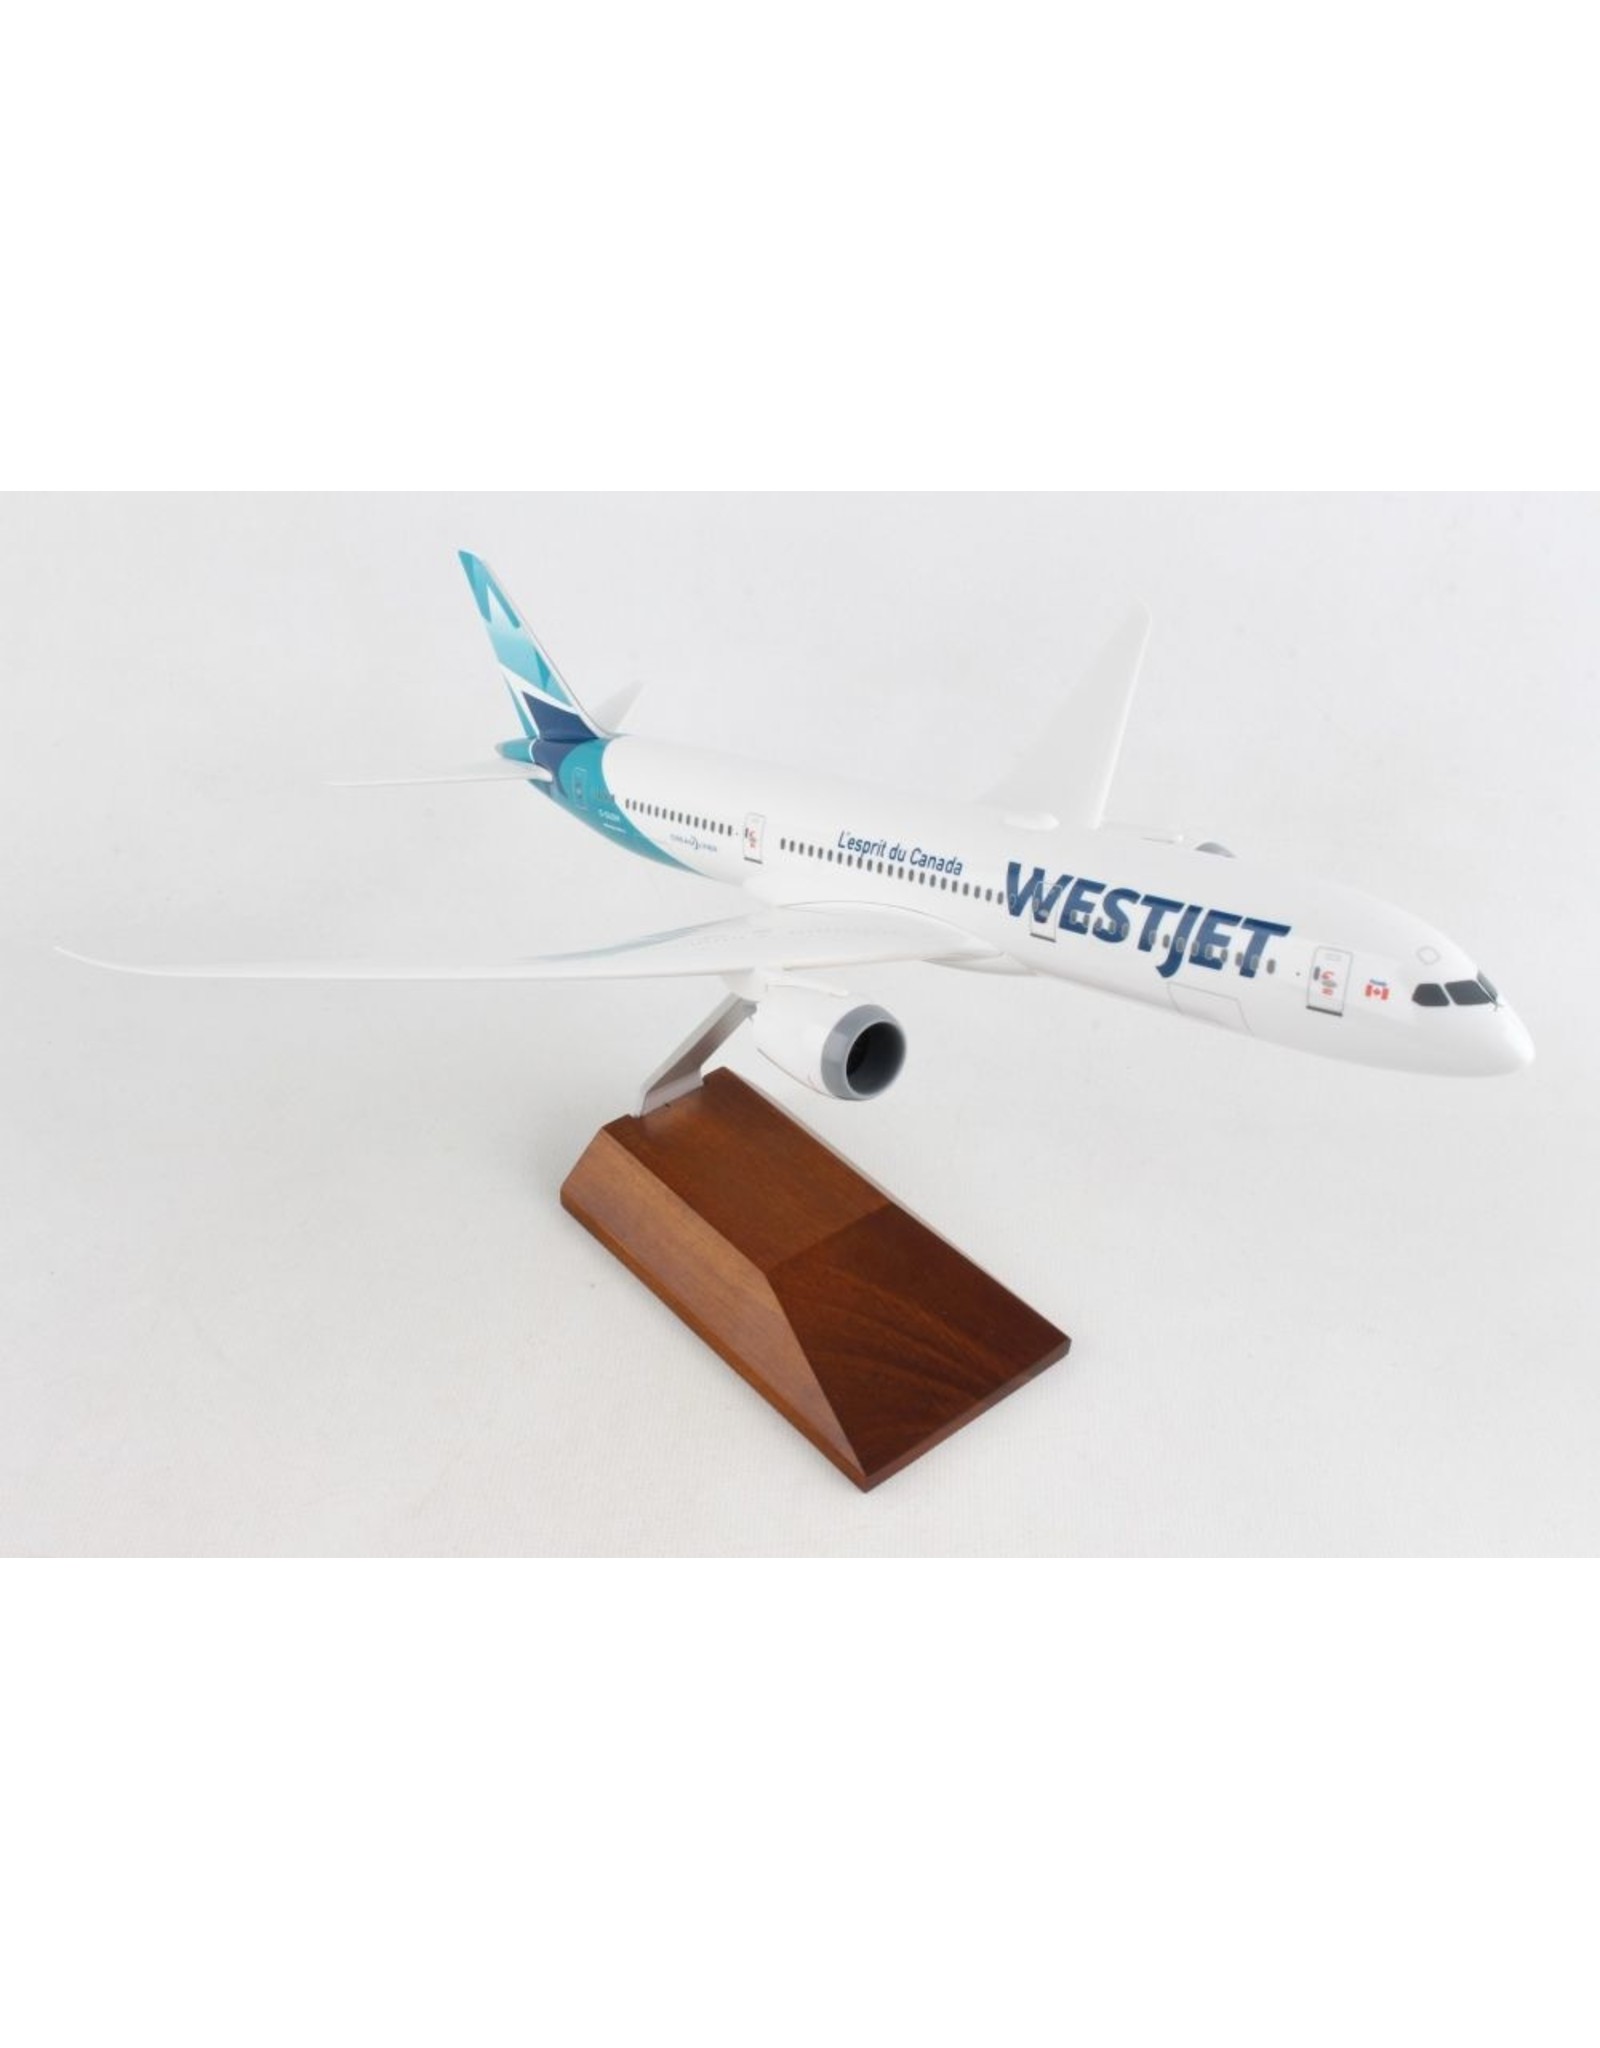 Skymarks Skymarks Westjet 787-9 w/Wood Stand